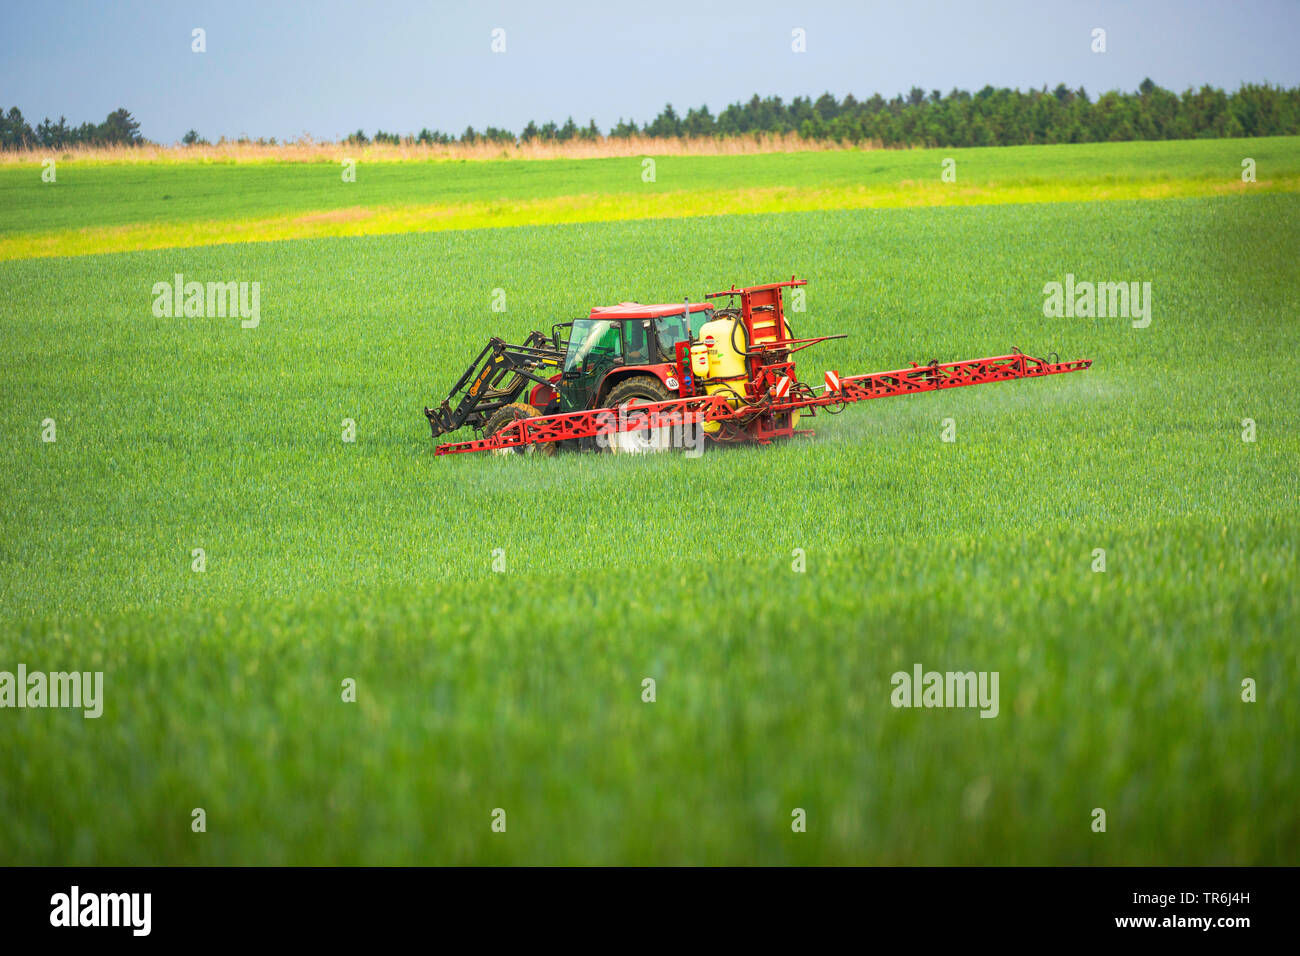 Pan de trigo, trigo cultivado (Triticum aestivum), tractor de aplicar pesticidas en un campo de trigo, Alemania, Baviera Foto de stock